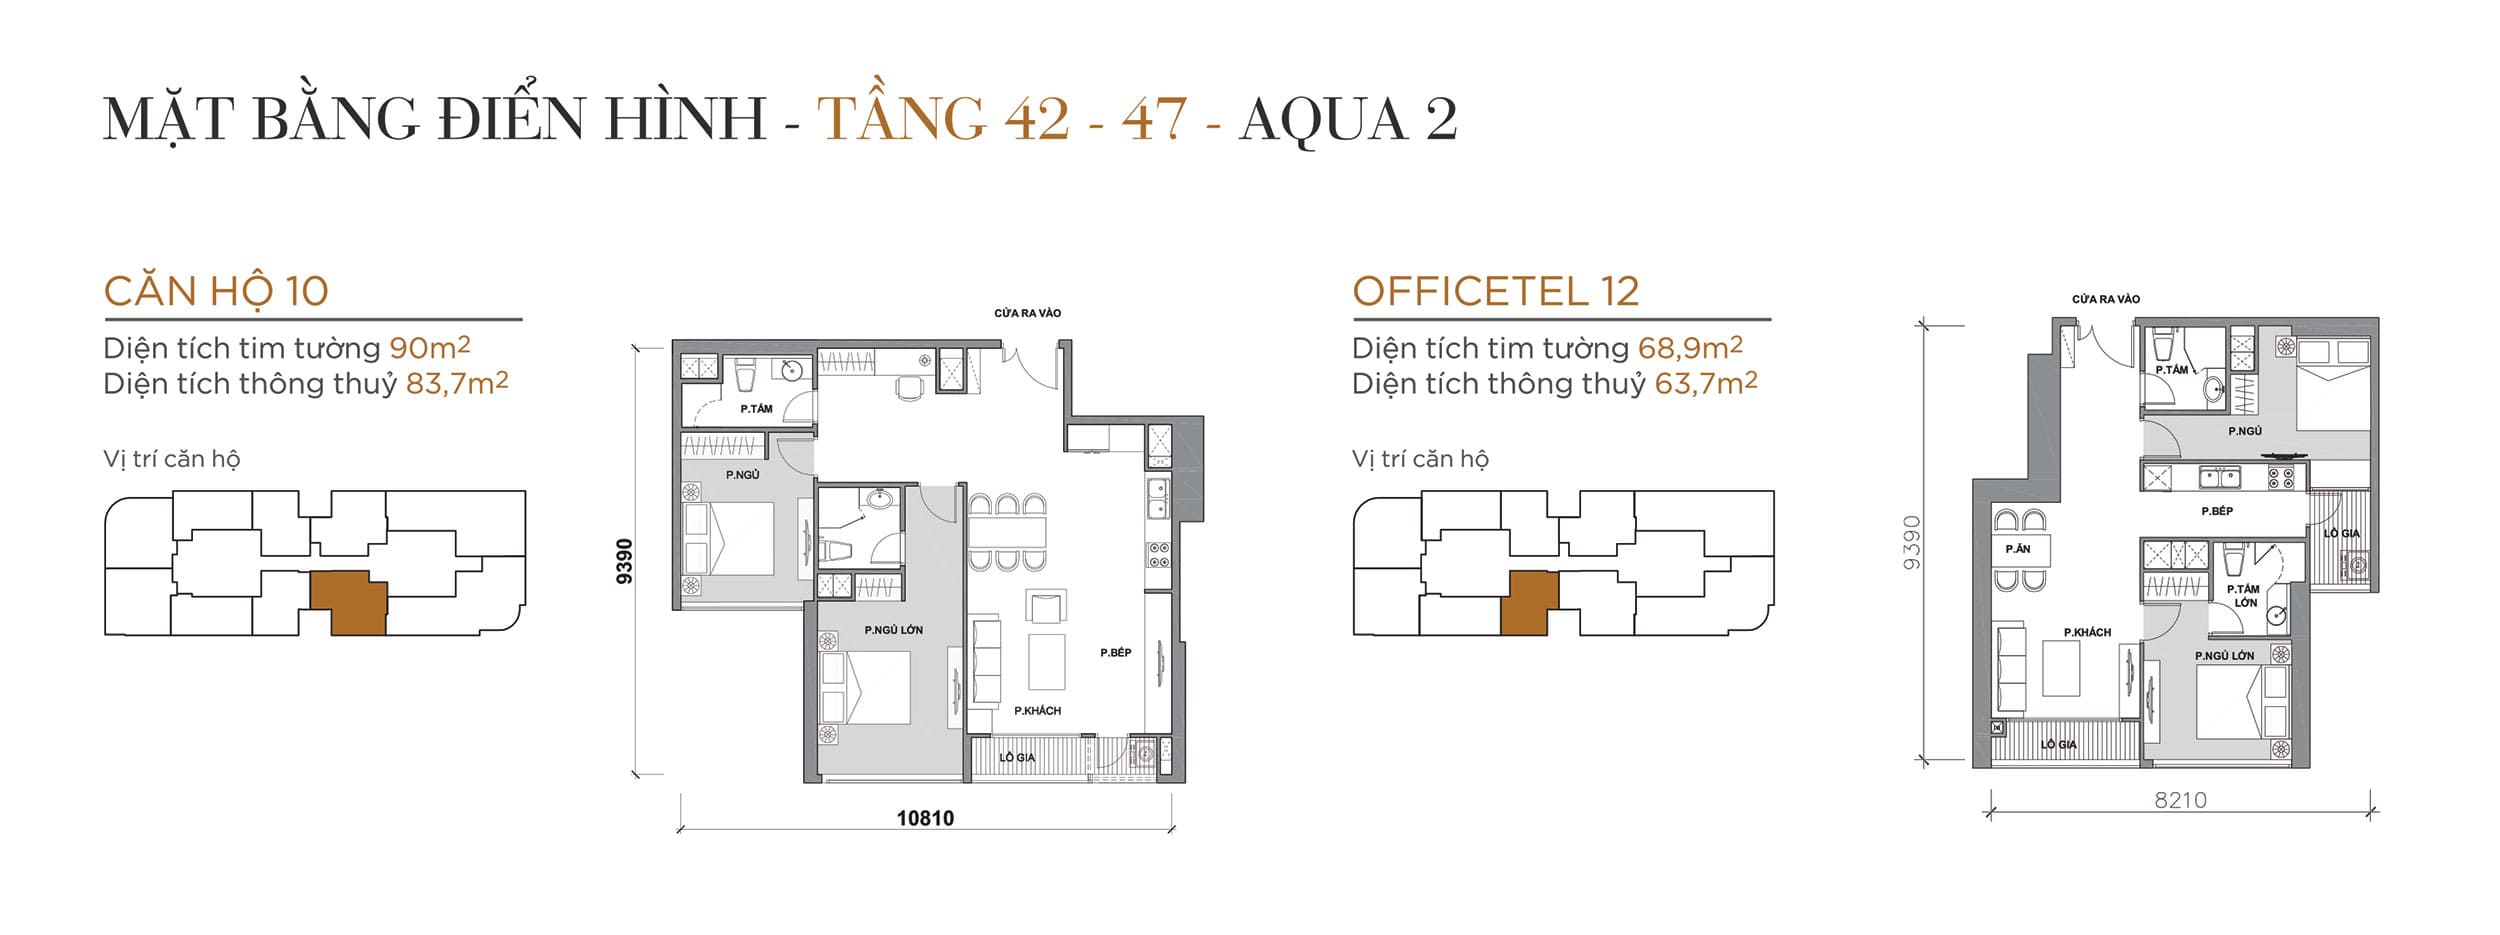 Layout thiết kế điển hình Tầng 42 đến Tầng 47 Tòa Aqua 2 loại Căn hộ 10, Officetel 12.